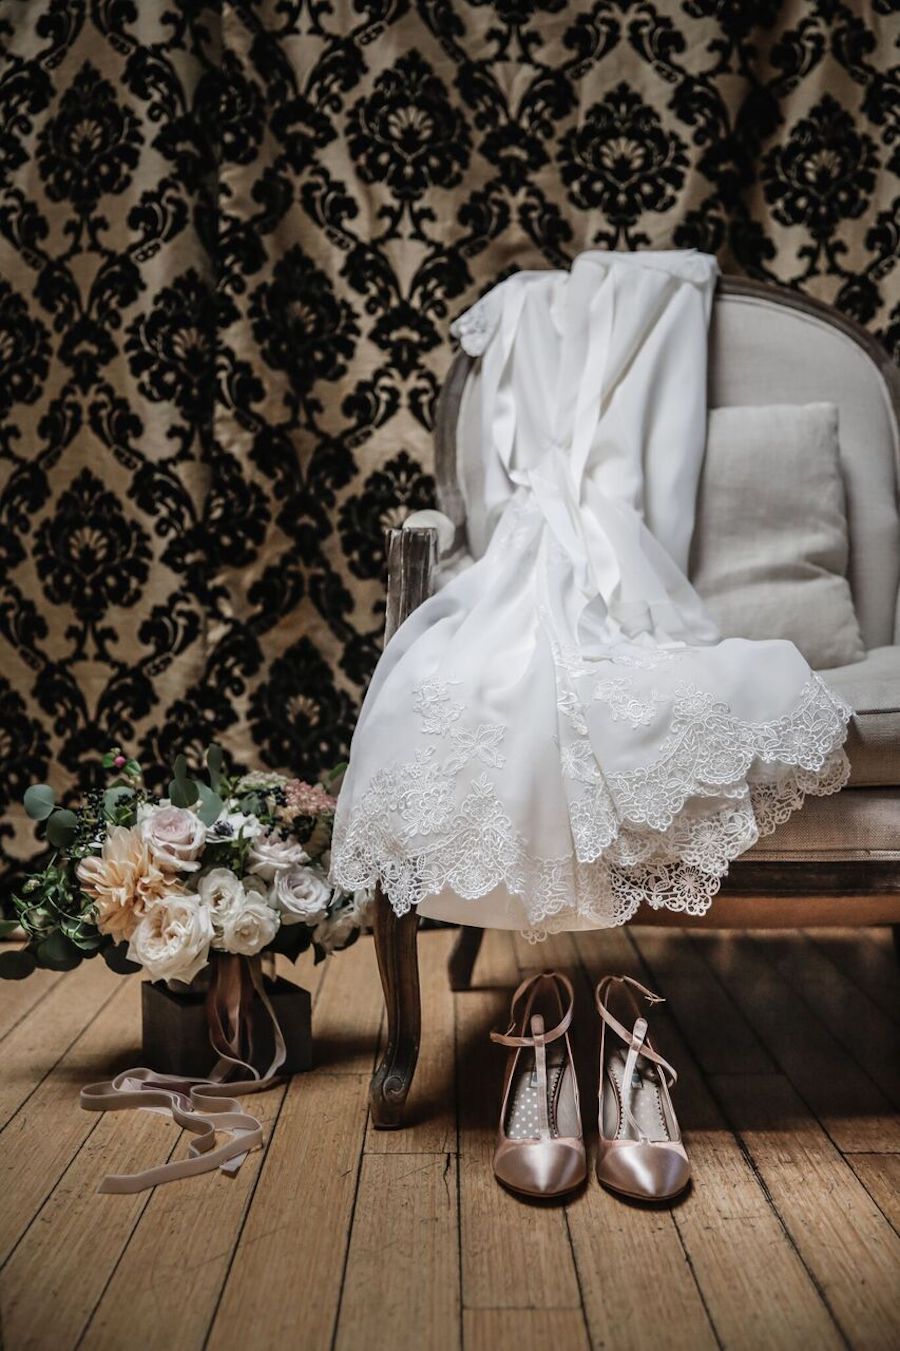 Wedding Dress & Bouquet